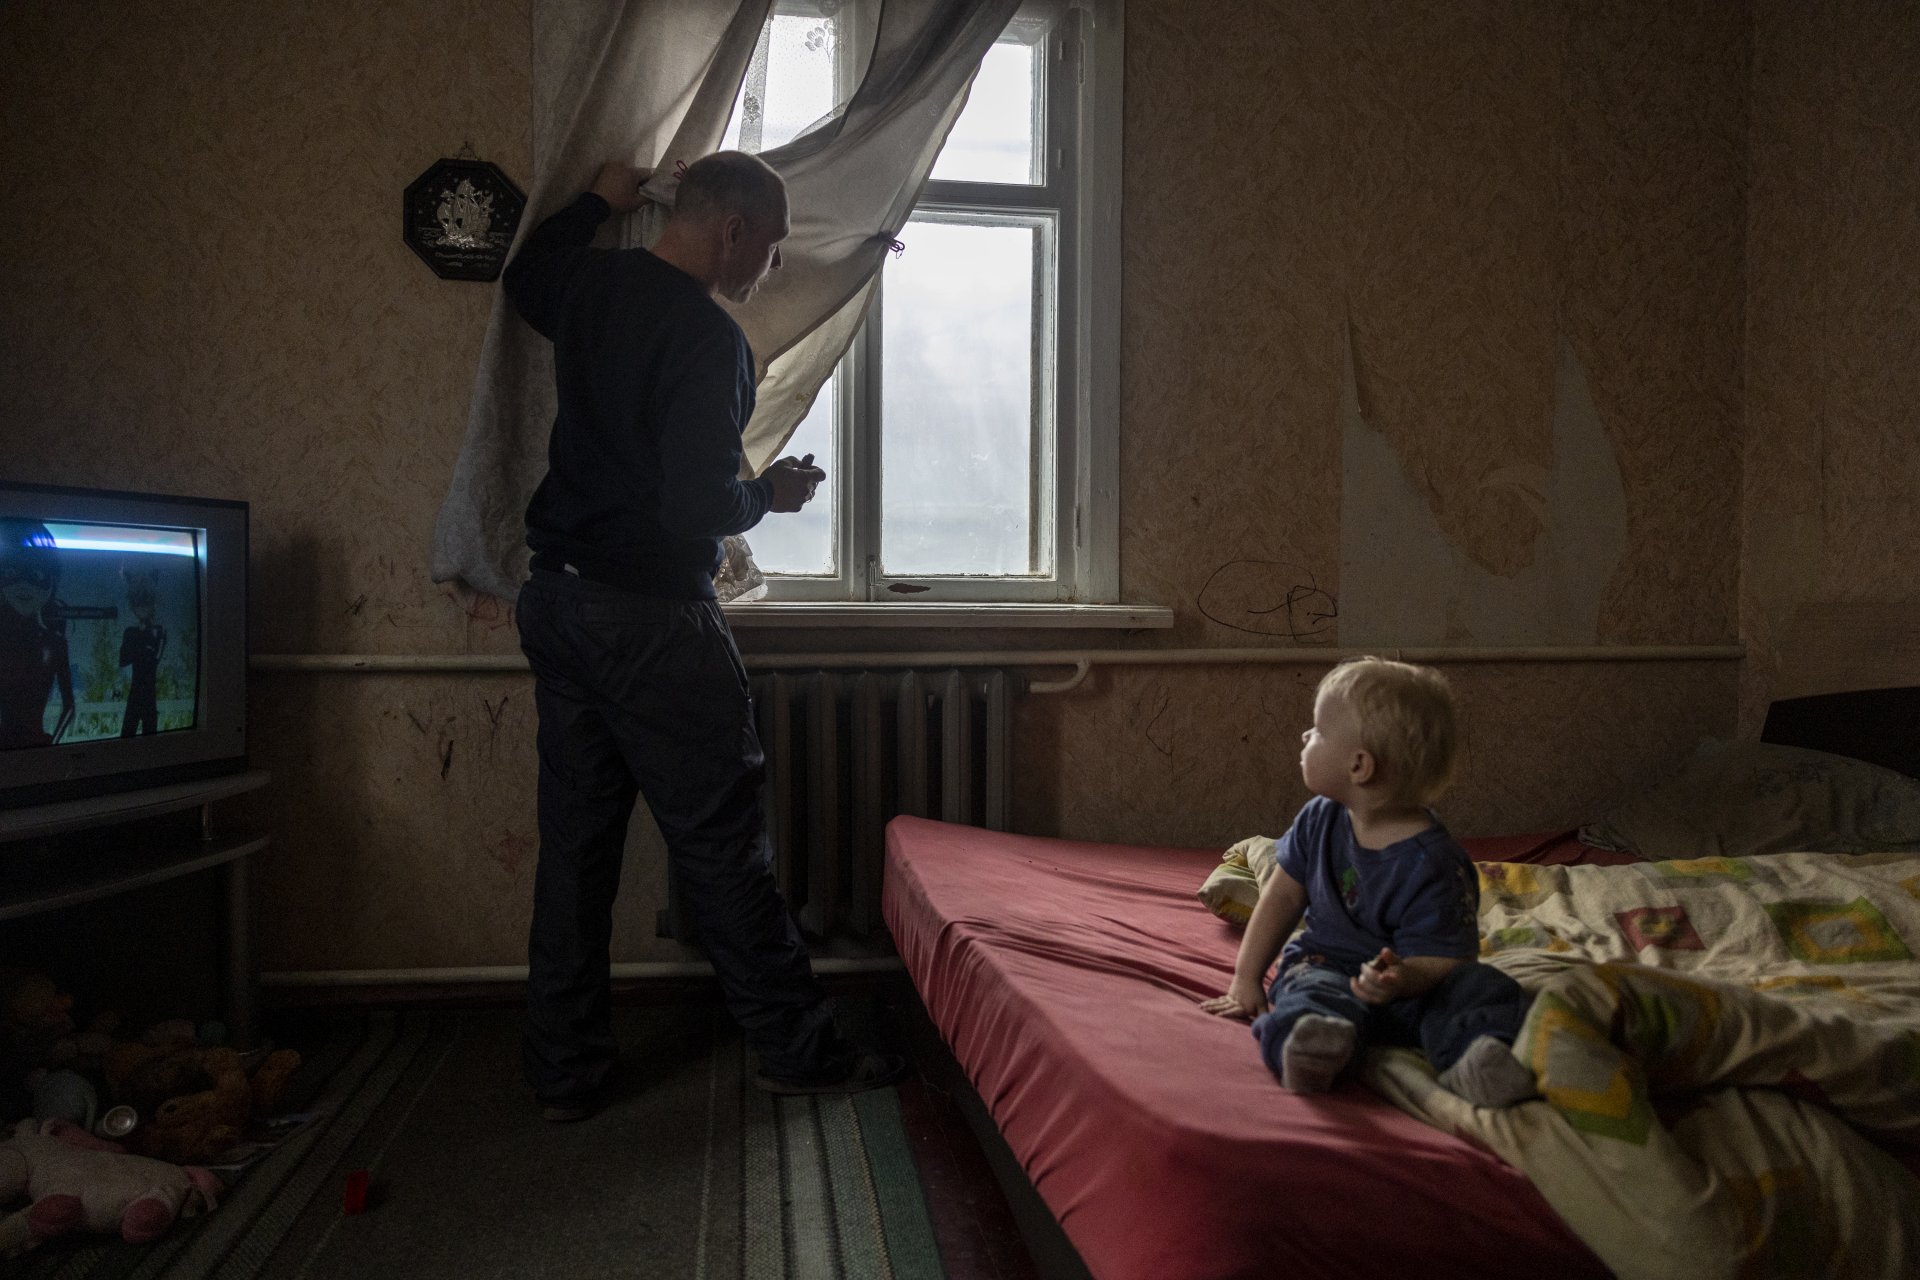 Виталий на 39 години от Купянск, чака да пристигне екип за евакуация, който да му помогне да отведе децата сина безопасно място.